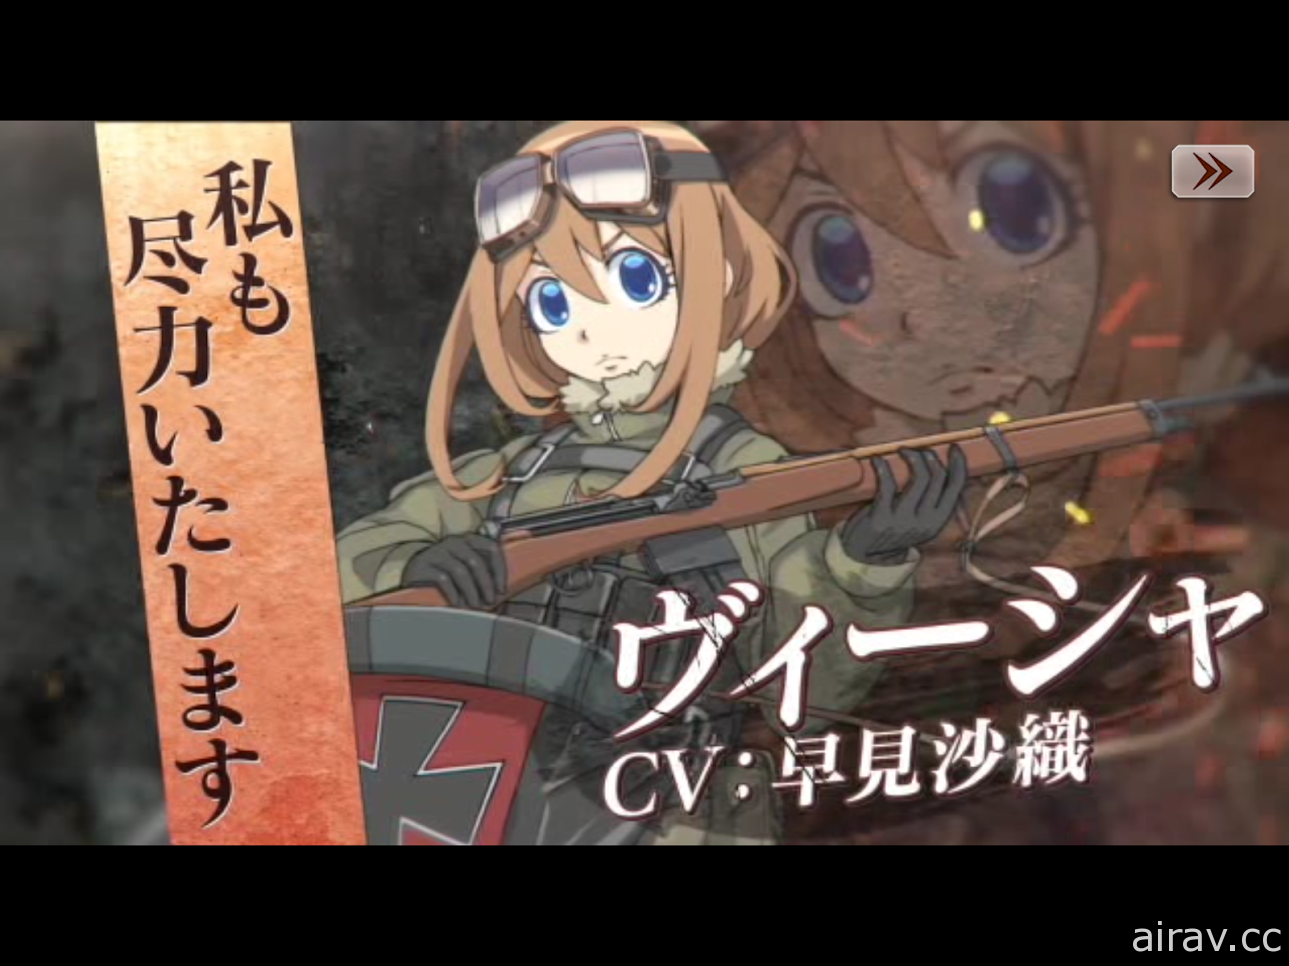 《幼女戰記 魔導師之戰》開啟日本 Google Play 預約 釋出最新宣傳影片